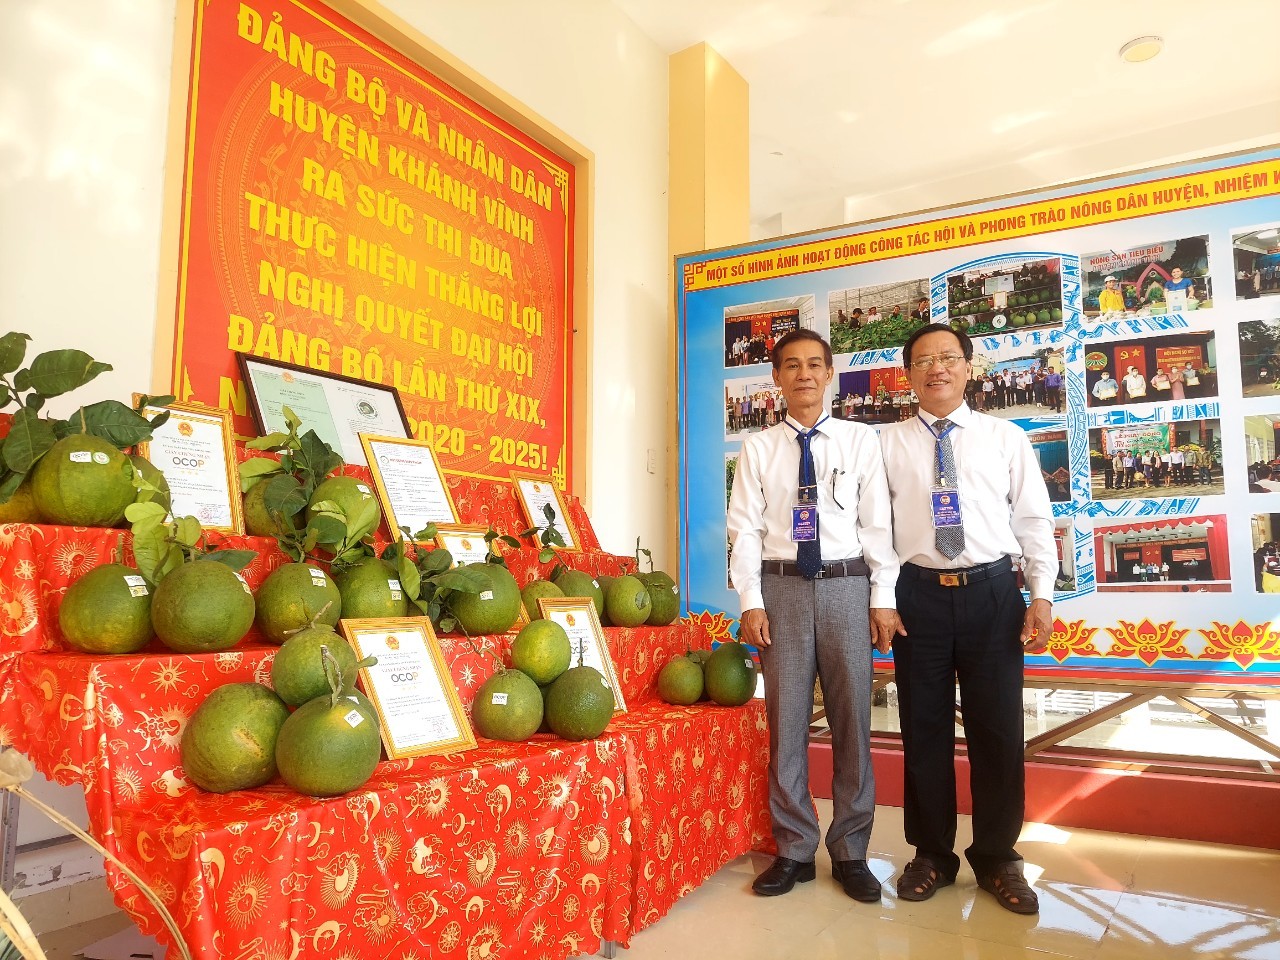 Huyện miền núi đầu tiên ở Khánh Hòa đã tổ chức thành công Đại hội nông dân - Ảnh 4.